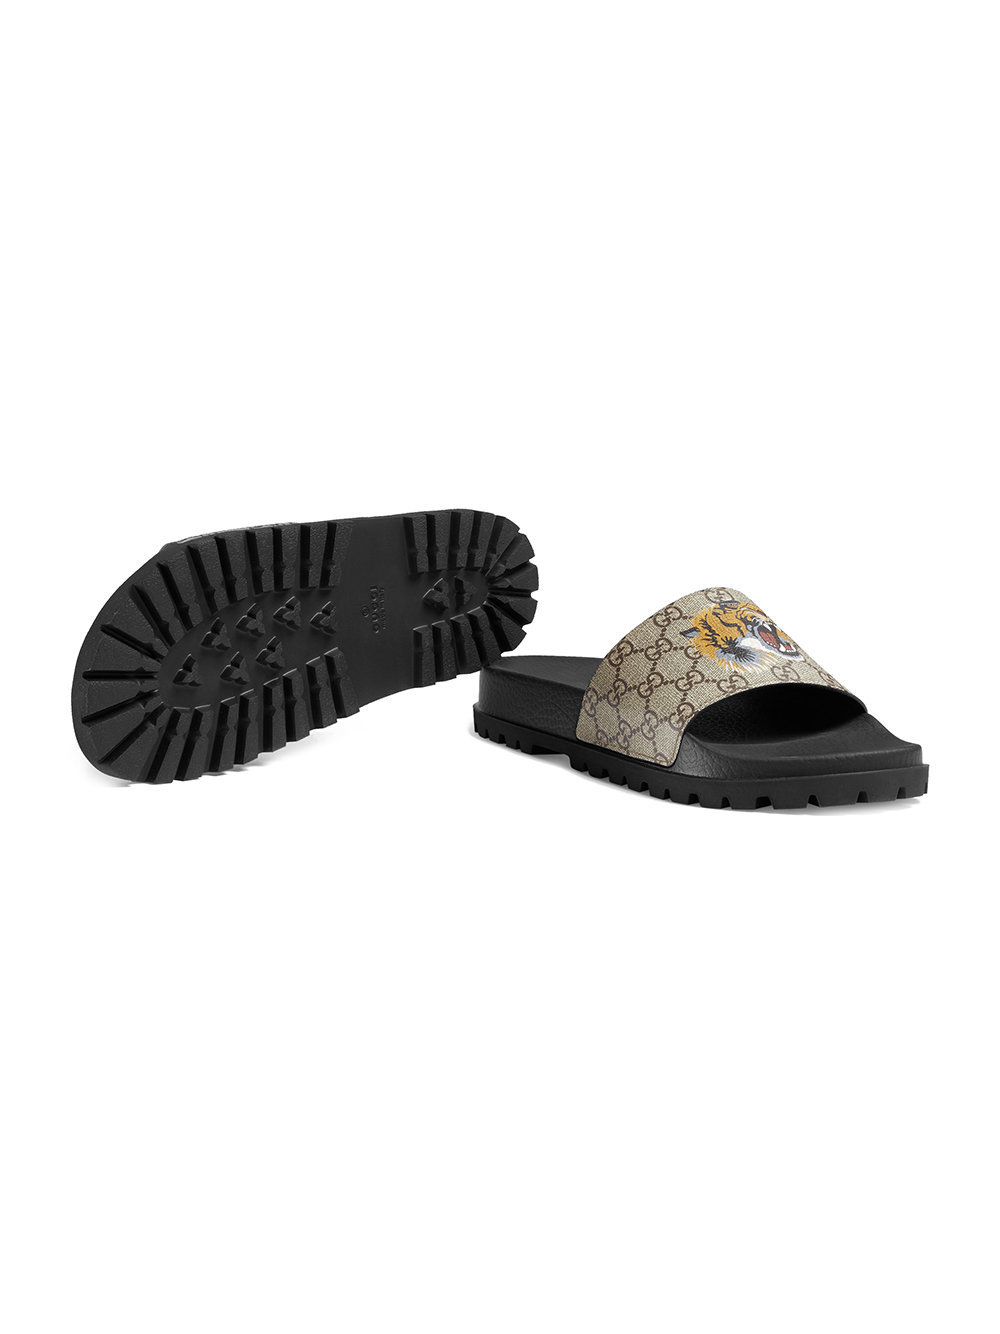 gg supreme tiger slide sandal